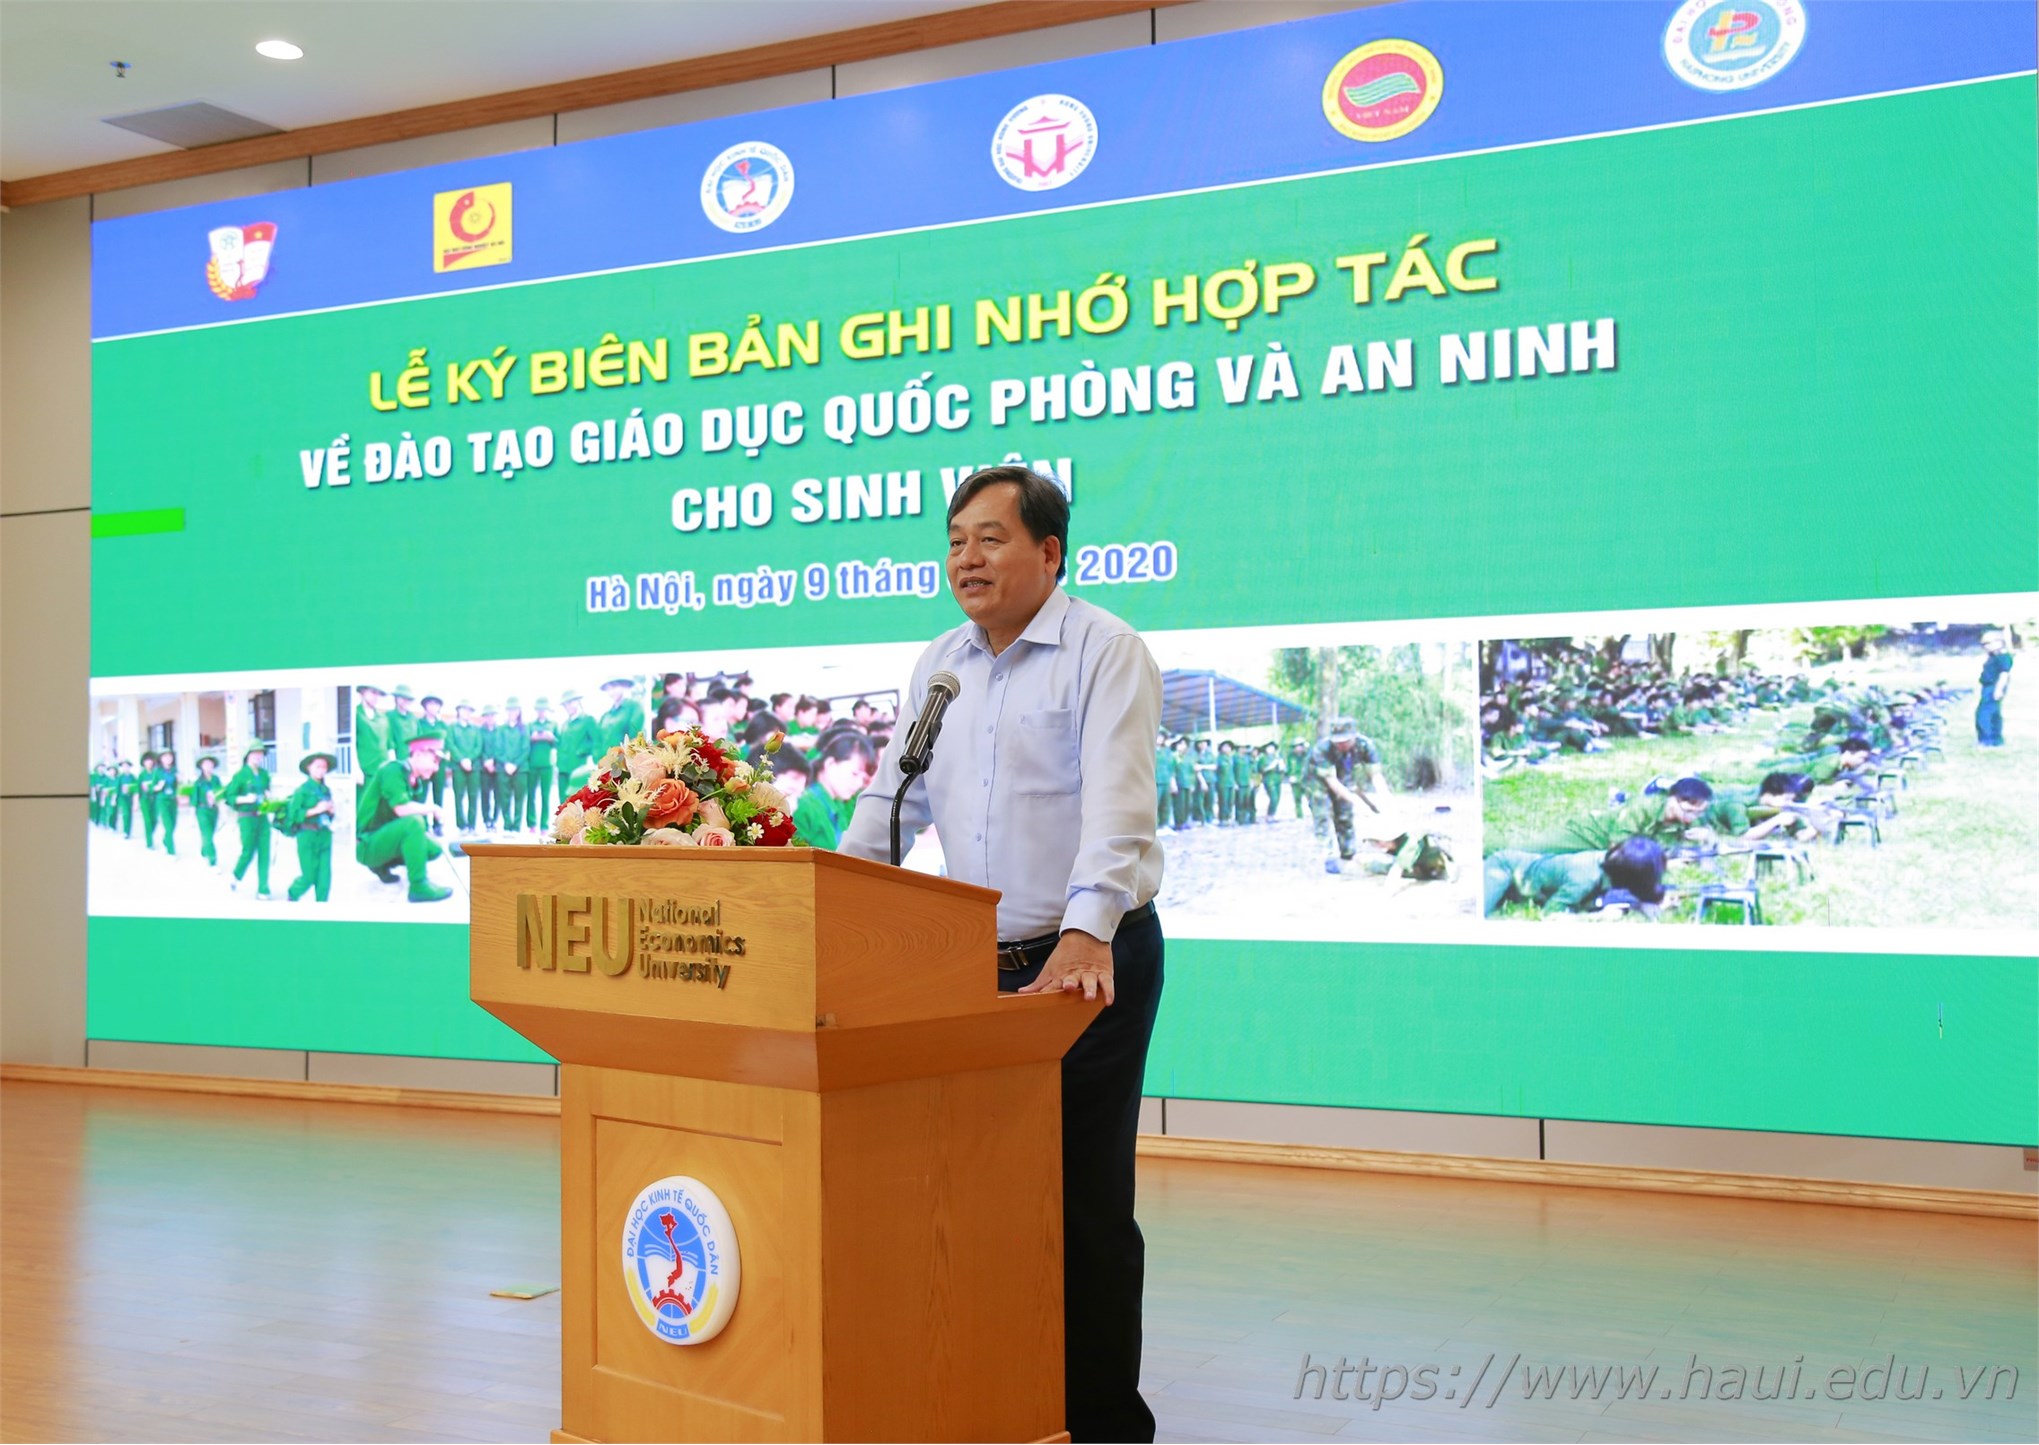 Đại học Công nghiệp Hà Nội hợp tác đào tạo giáo dục quốc phòng và an ninh với Đại học Kinh tế Quốc dân